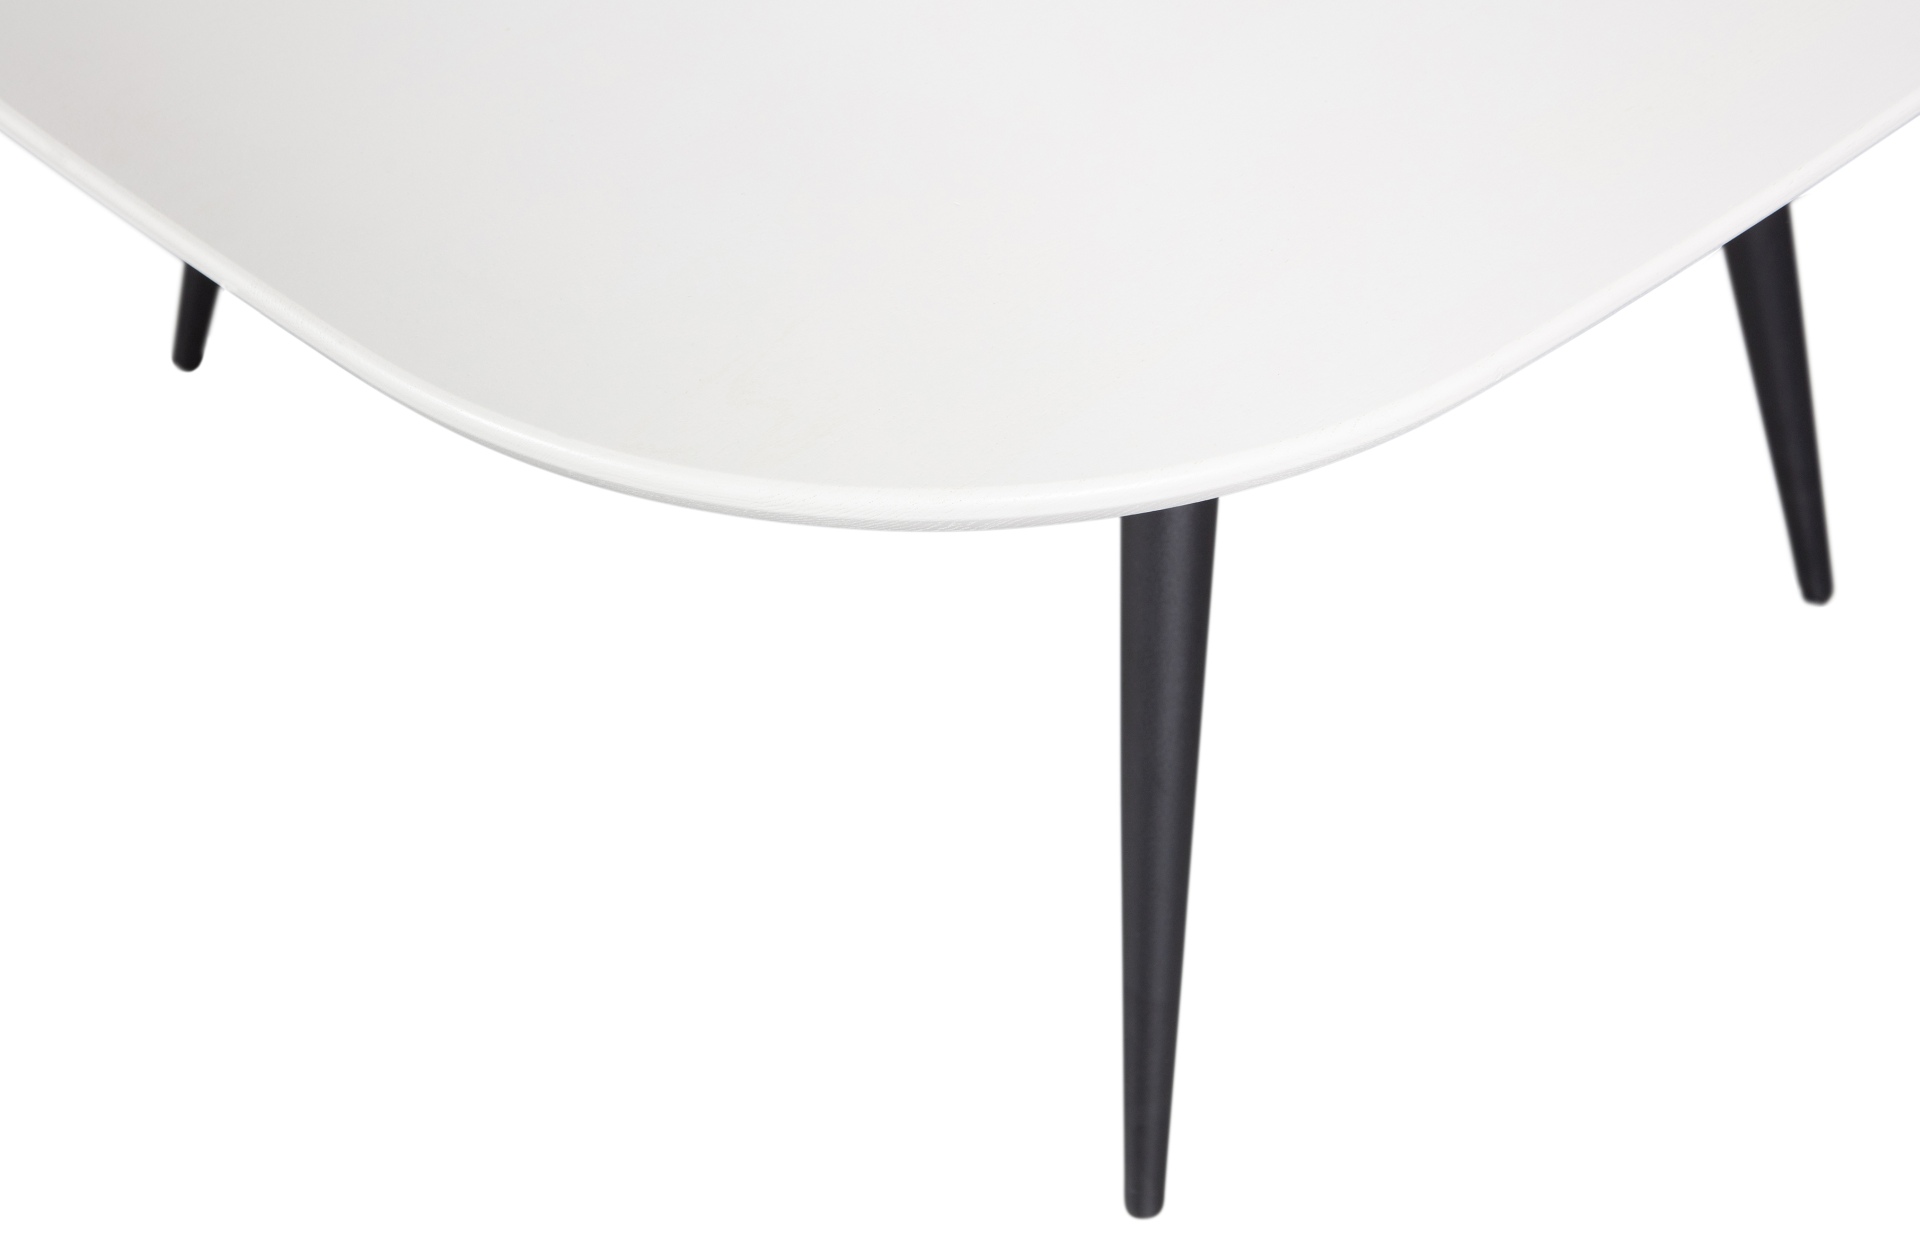 Der Esstisch Tablo überzeugt mit ihrem klassischen Design. Gefertigt wurde er aus Eschenholz, welches einen weißen Farbton besitzt. Das Gestell ist aus Metall und hat eine schwarze Farbe. Die Breite des Tisches beträgt 130 cm.